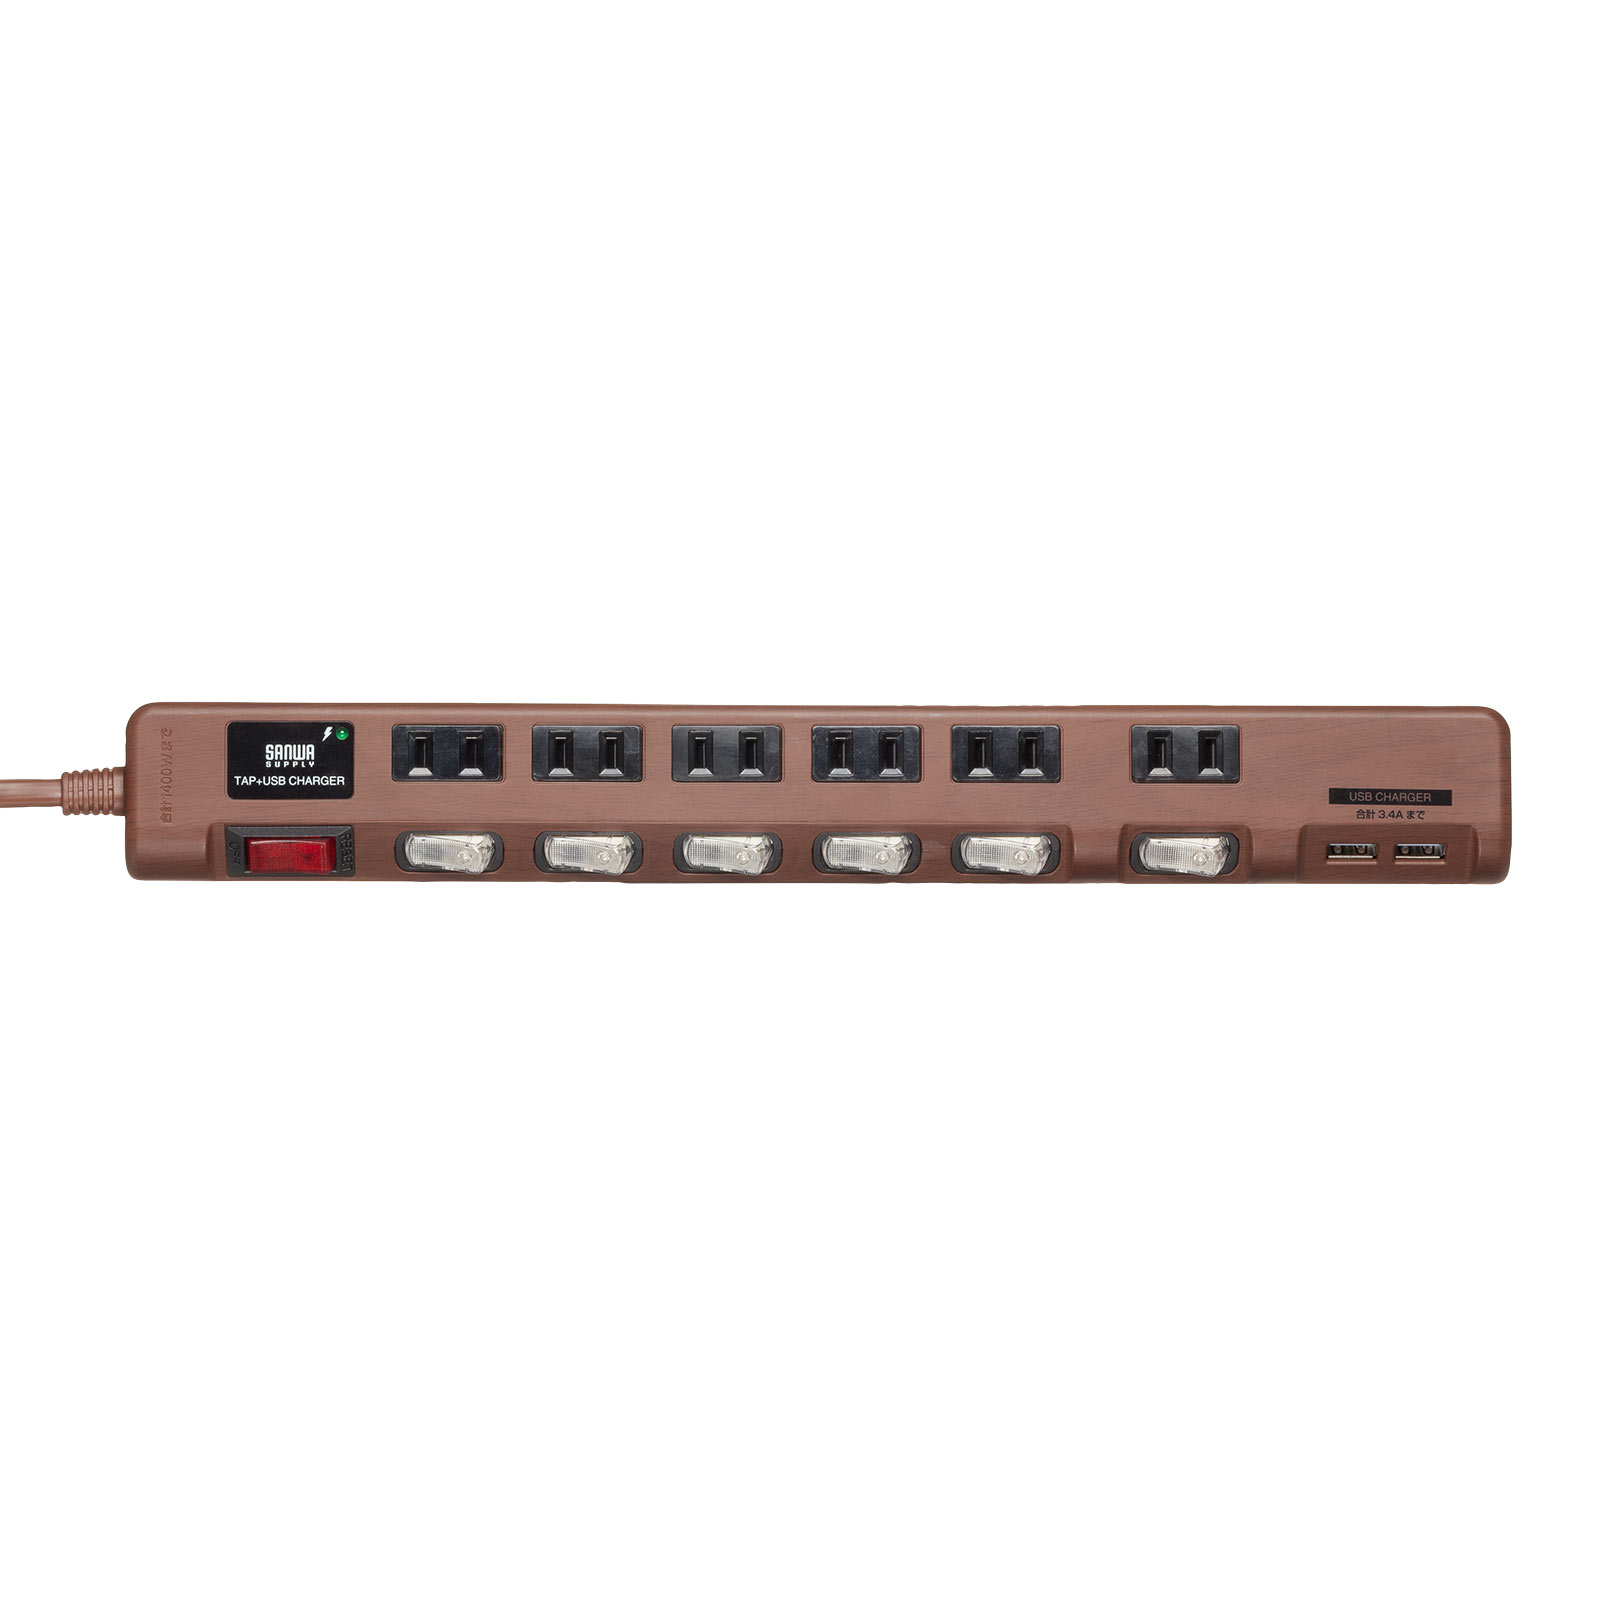 電源タップ USB2ポート付 雷ガード対応 6個口 2m ほこりシャッター付 個別スイッチ/一括スイッチ 木目調 ダークブラウン木目 700-TAP065-2DBRM